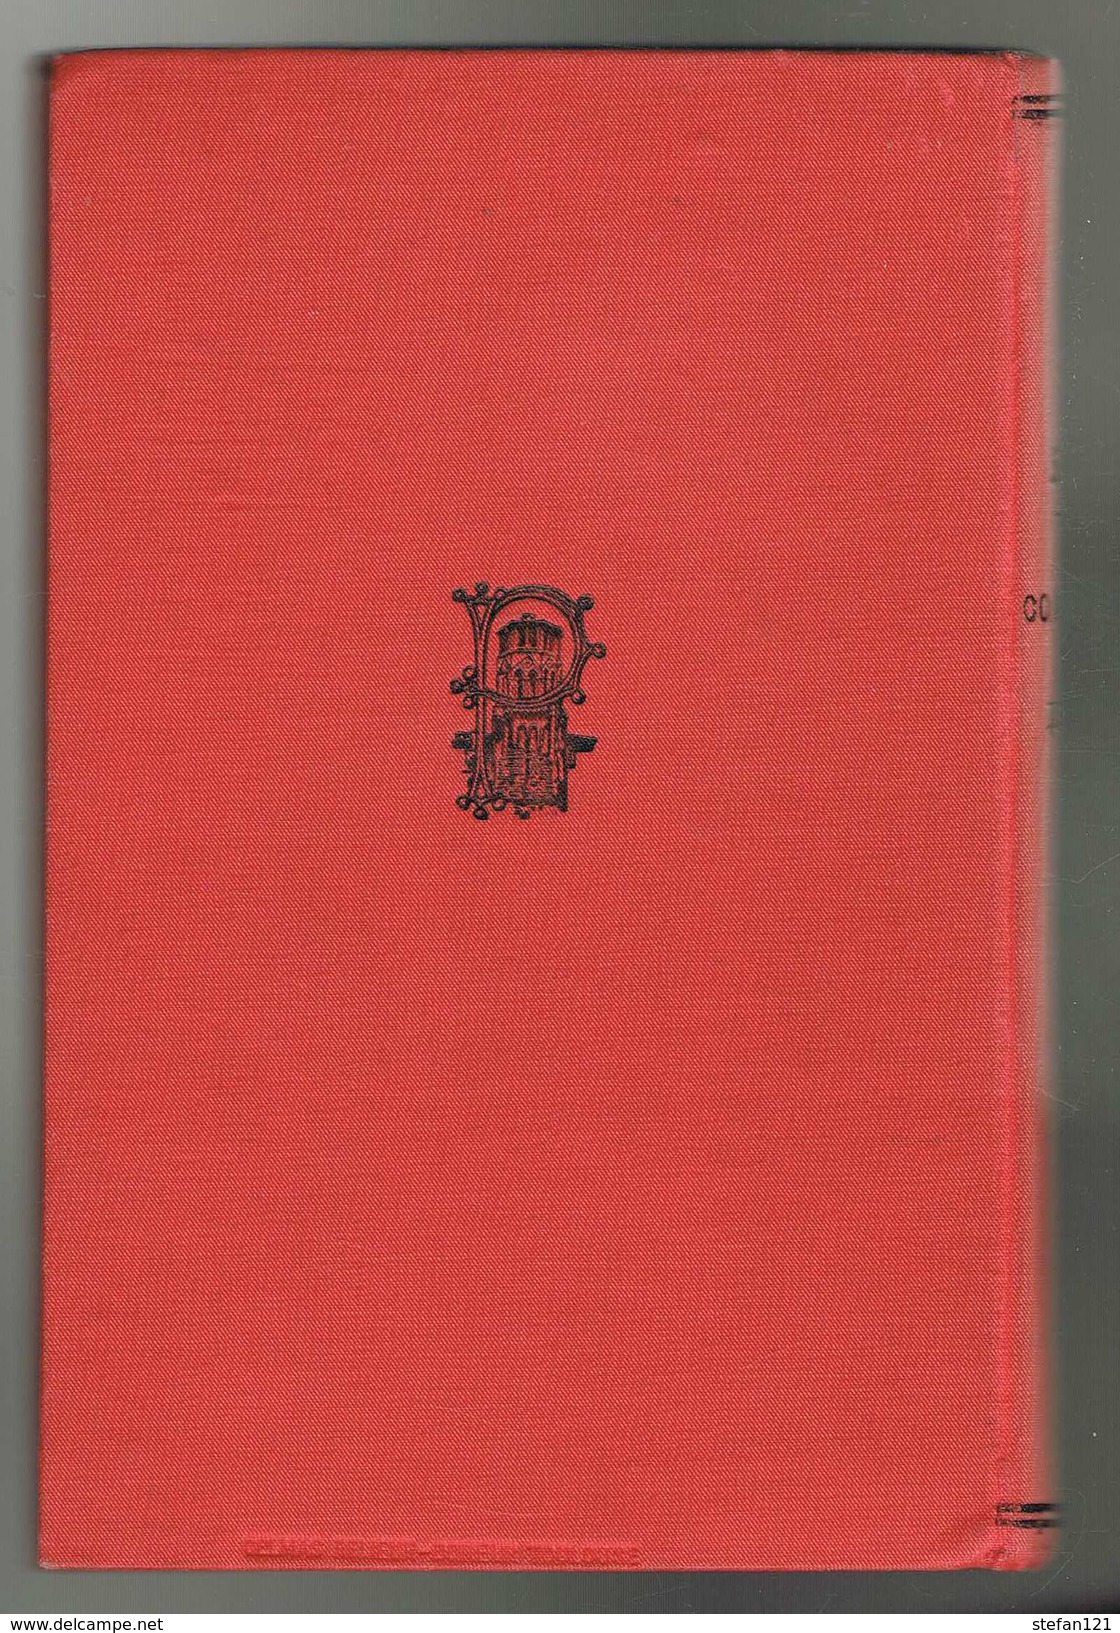 Classiques Espagnols - Alaux & Sagardoy - Solis La Conquista De Mejico - 336 Pages 18,5 X 12 Cm - Schulbücher